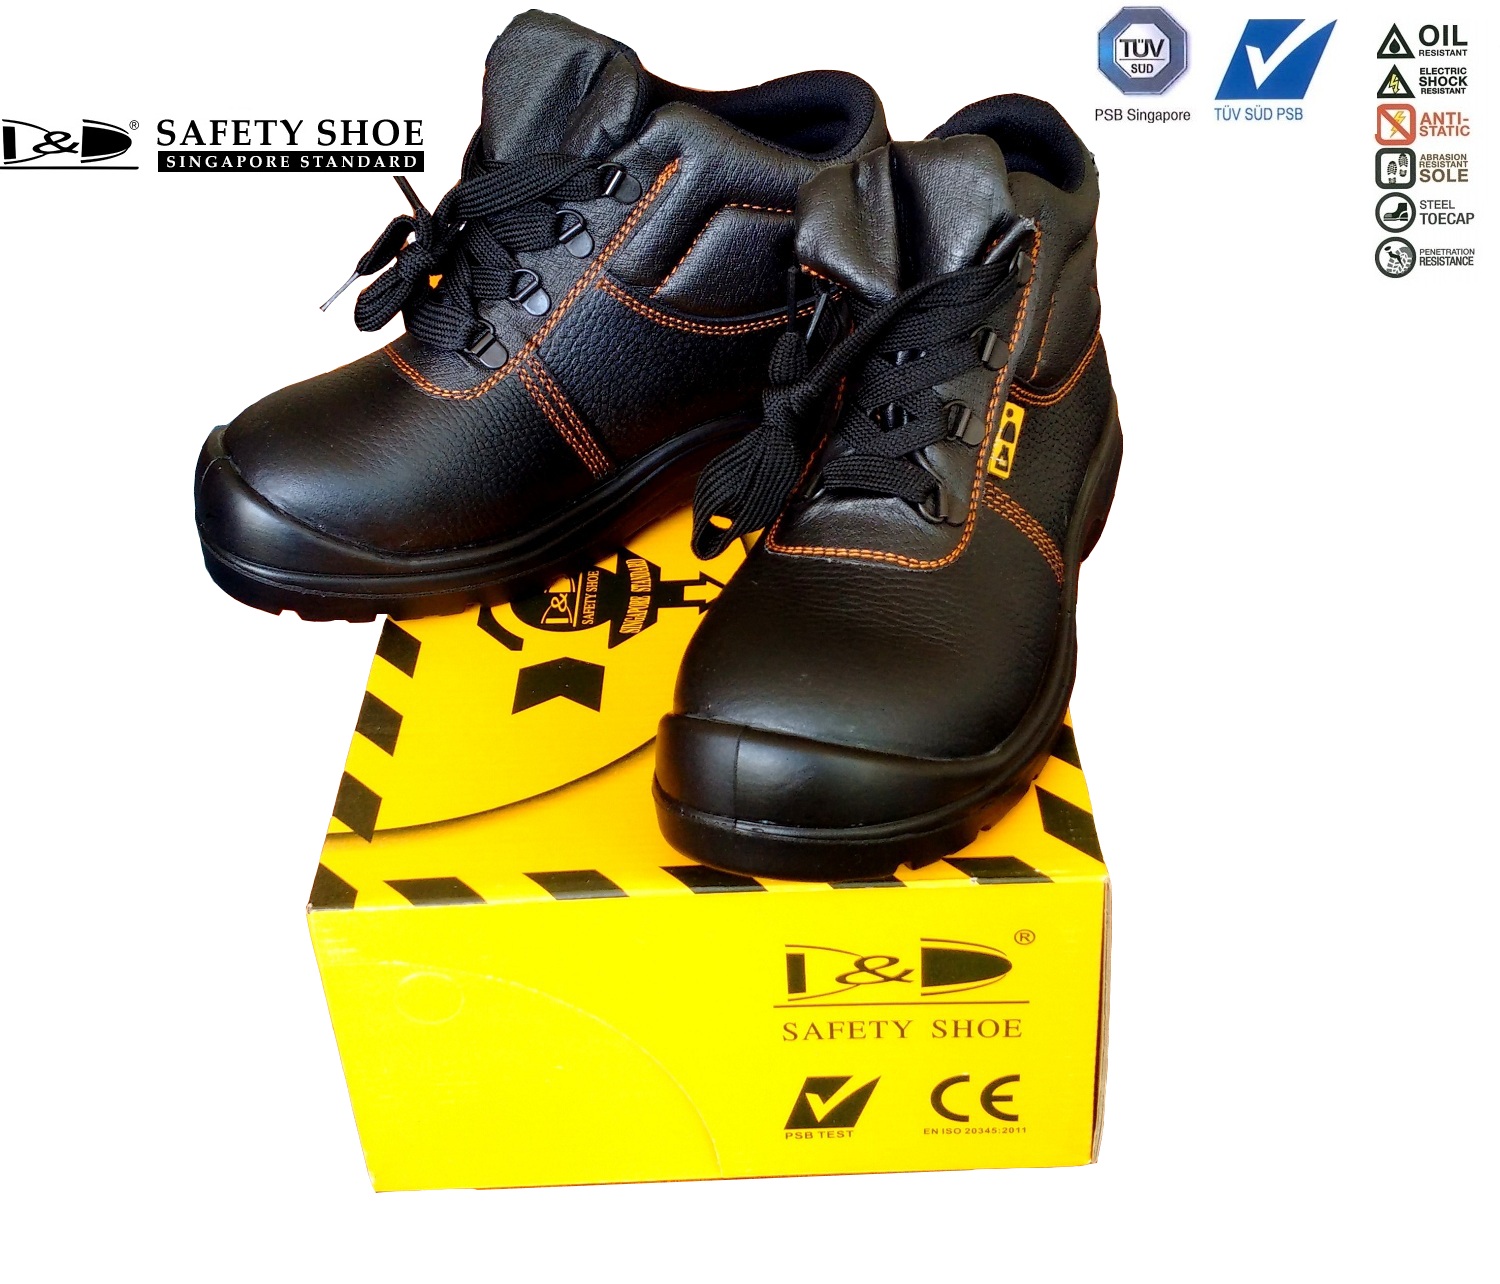 giày bảo hộ singapore D&D 03818 chất lượng cao